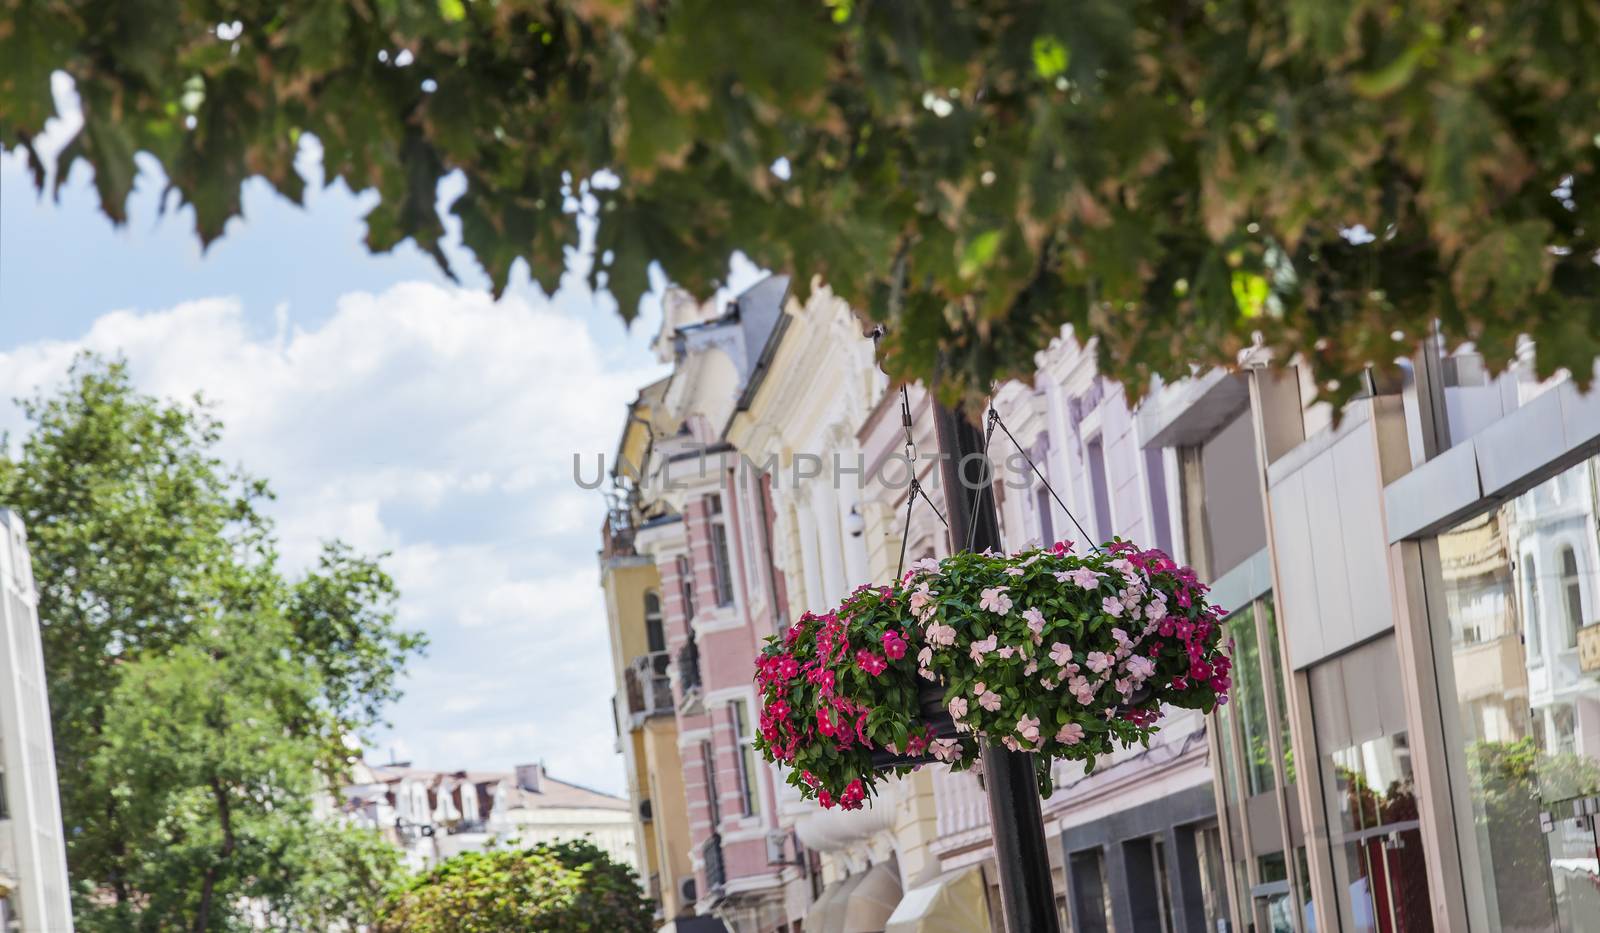 Hanging streets flower pots Plovdiv by vilevi